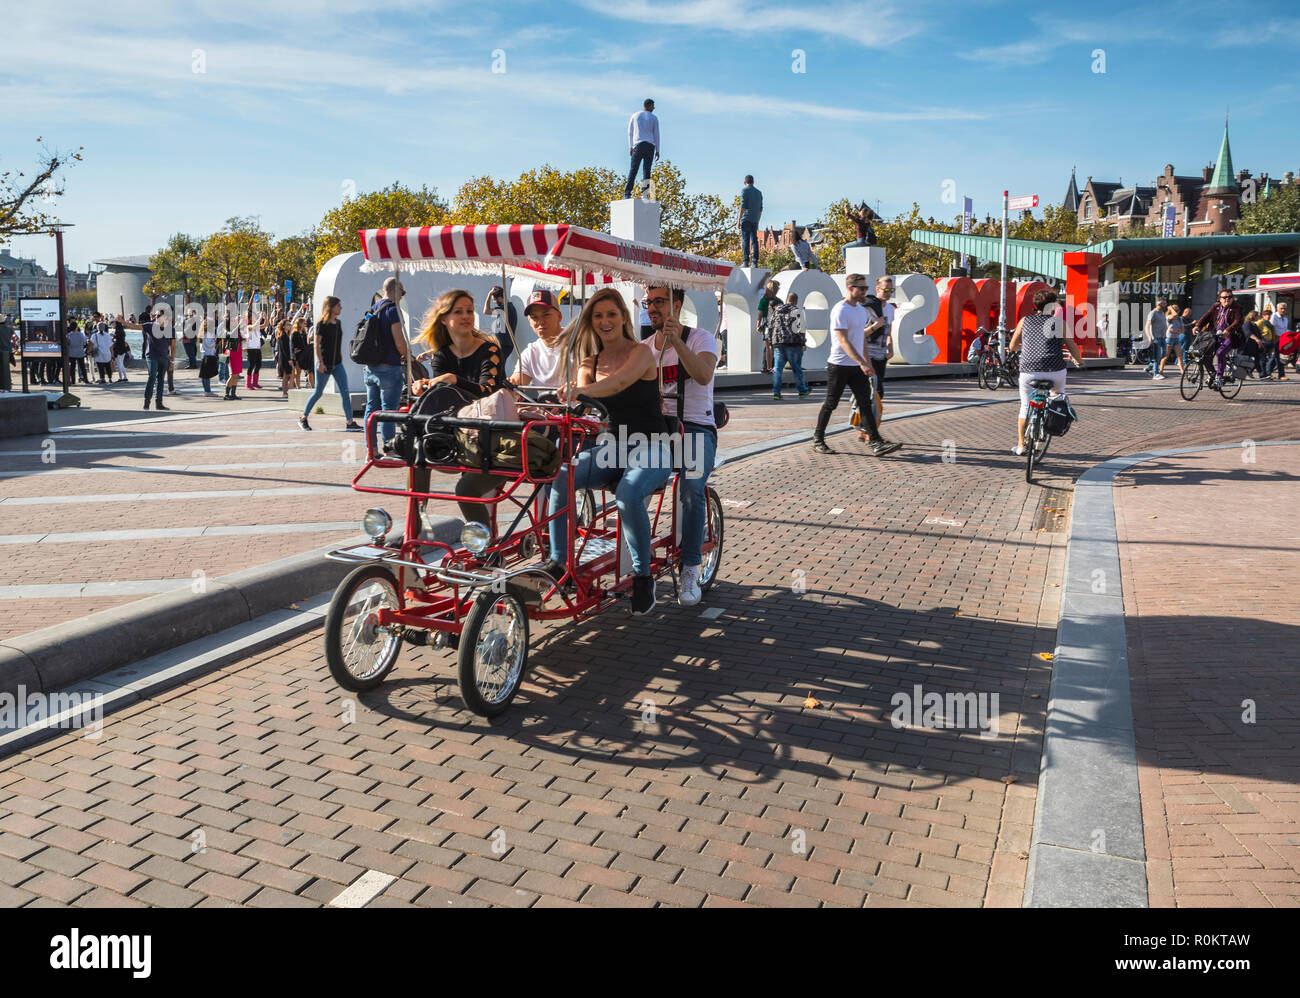 Les touristes à bicyclette près de chariot sign in Offres spéciales Iamsterdam Museumplein (place des Musées) Banque D'Images